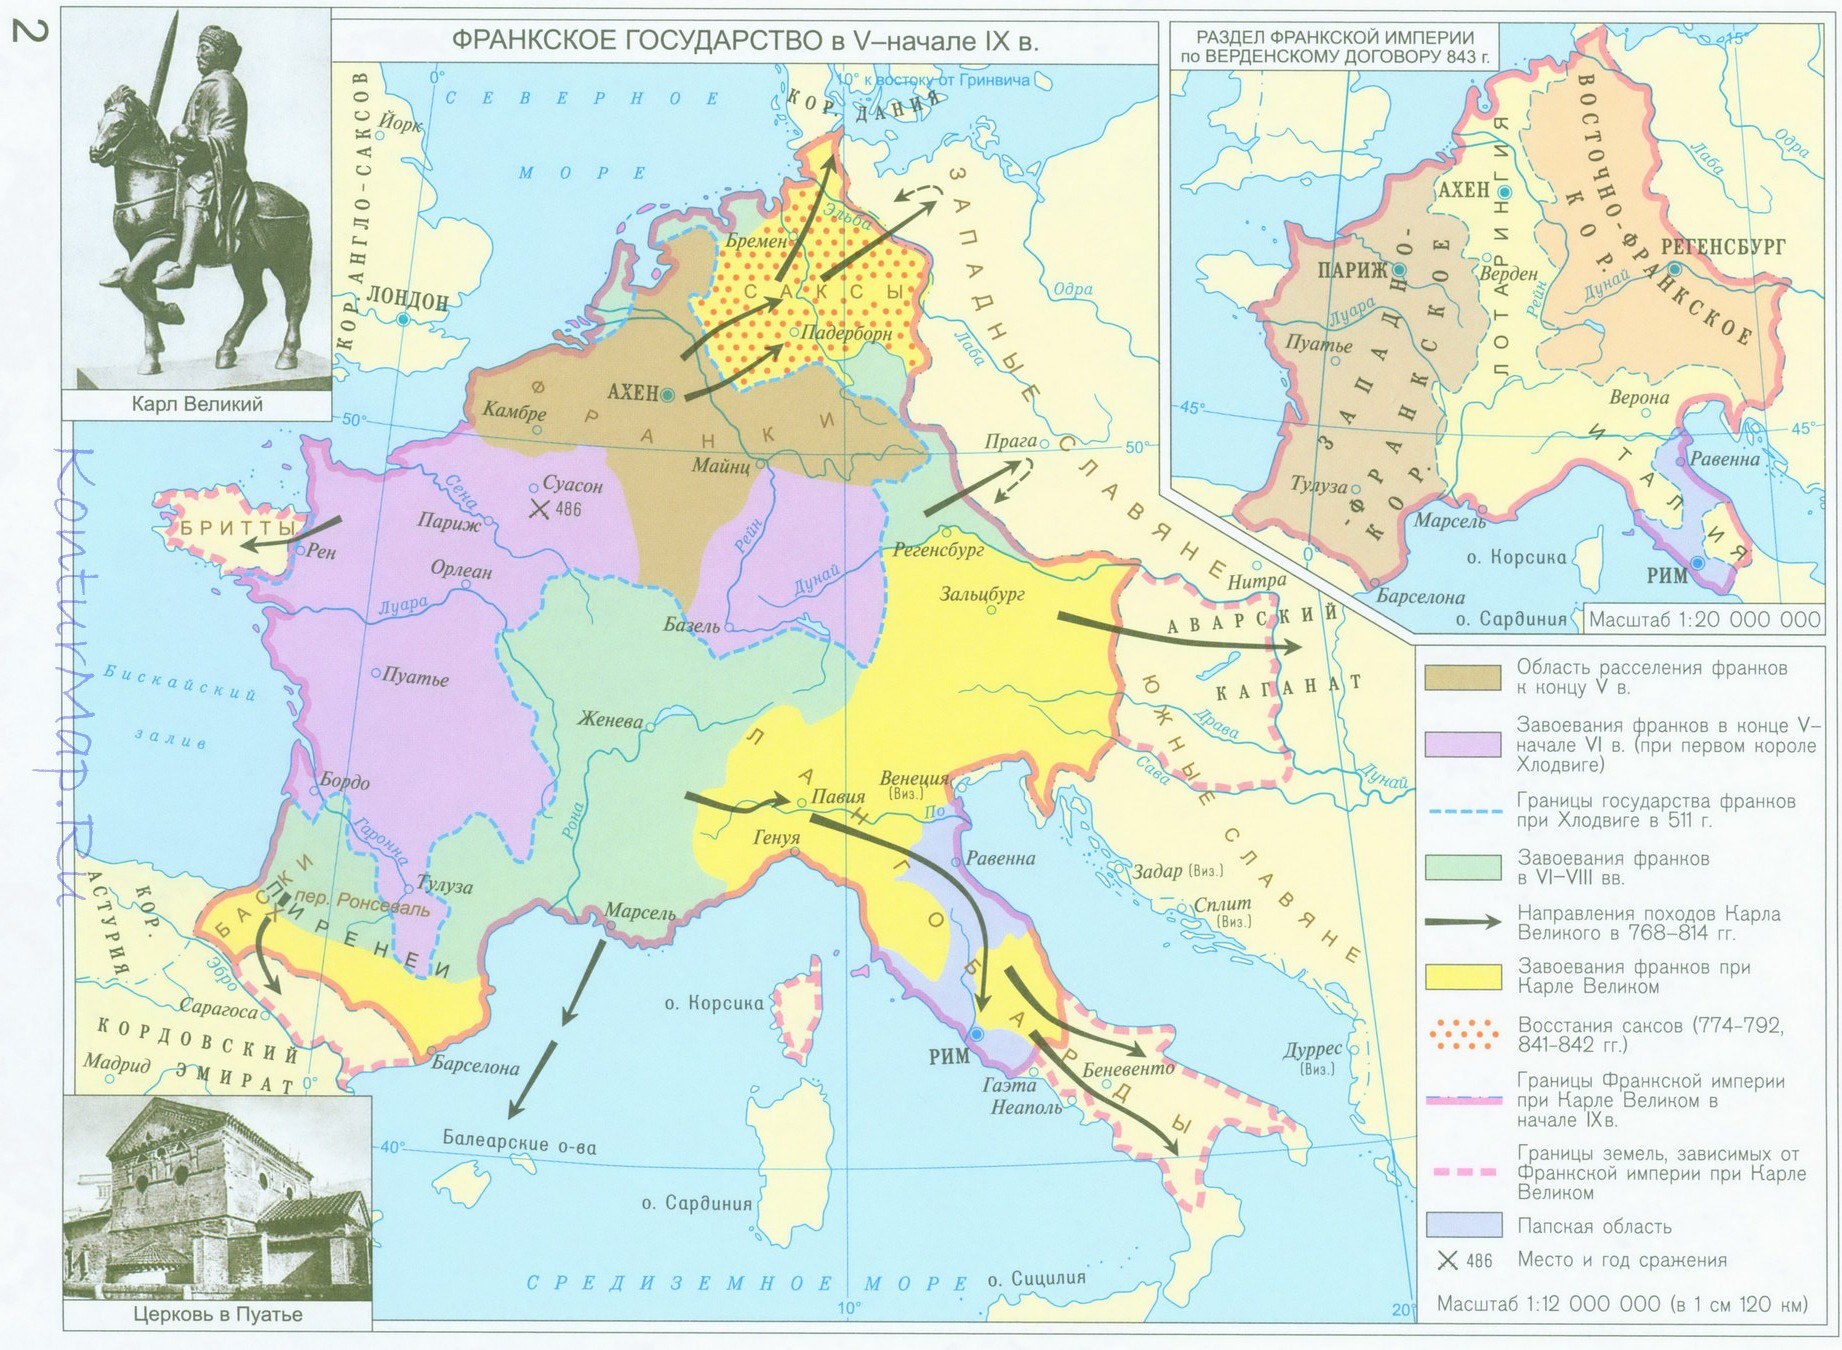 Создание франкской империи. Франкское королевство при Карле Великом. Карта Франкского государства при Карле Великом.